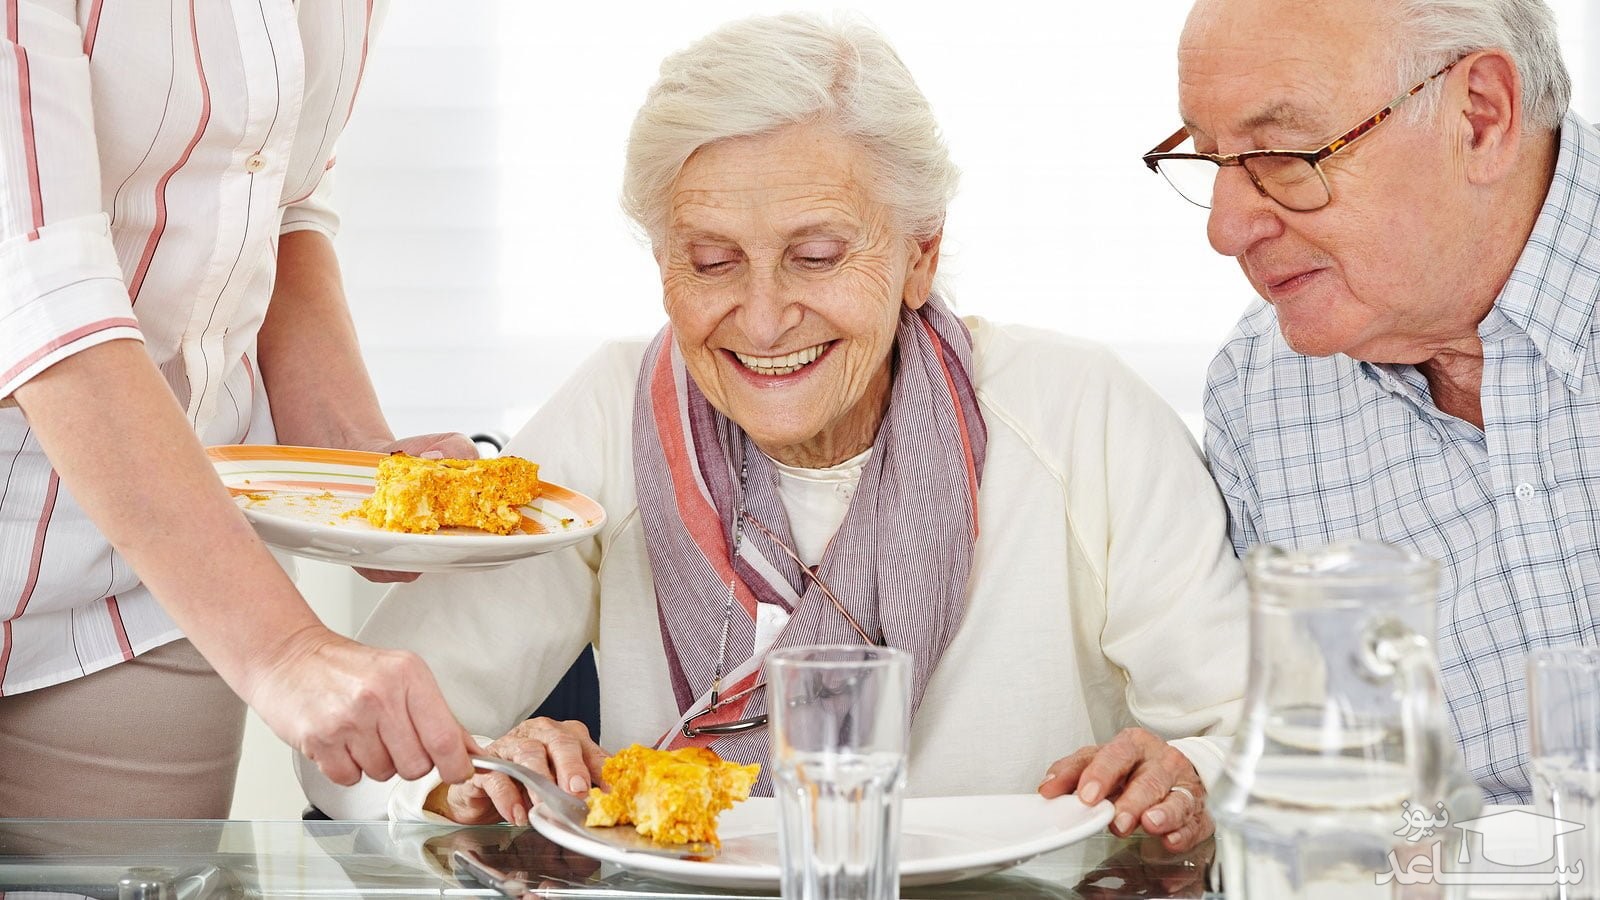 مناسب ترین و سالم ترین رژیم غذایی برای سالمندان